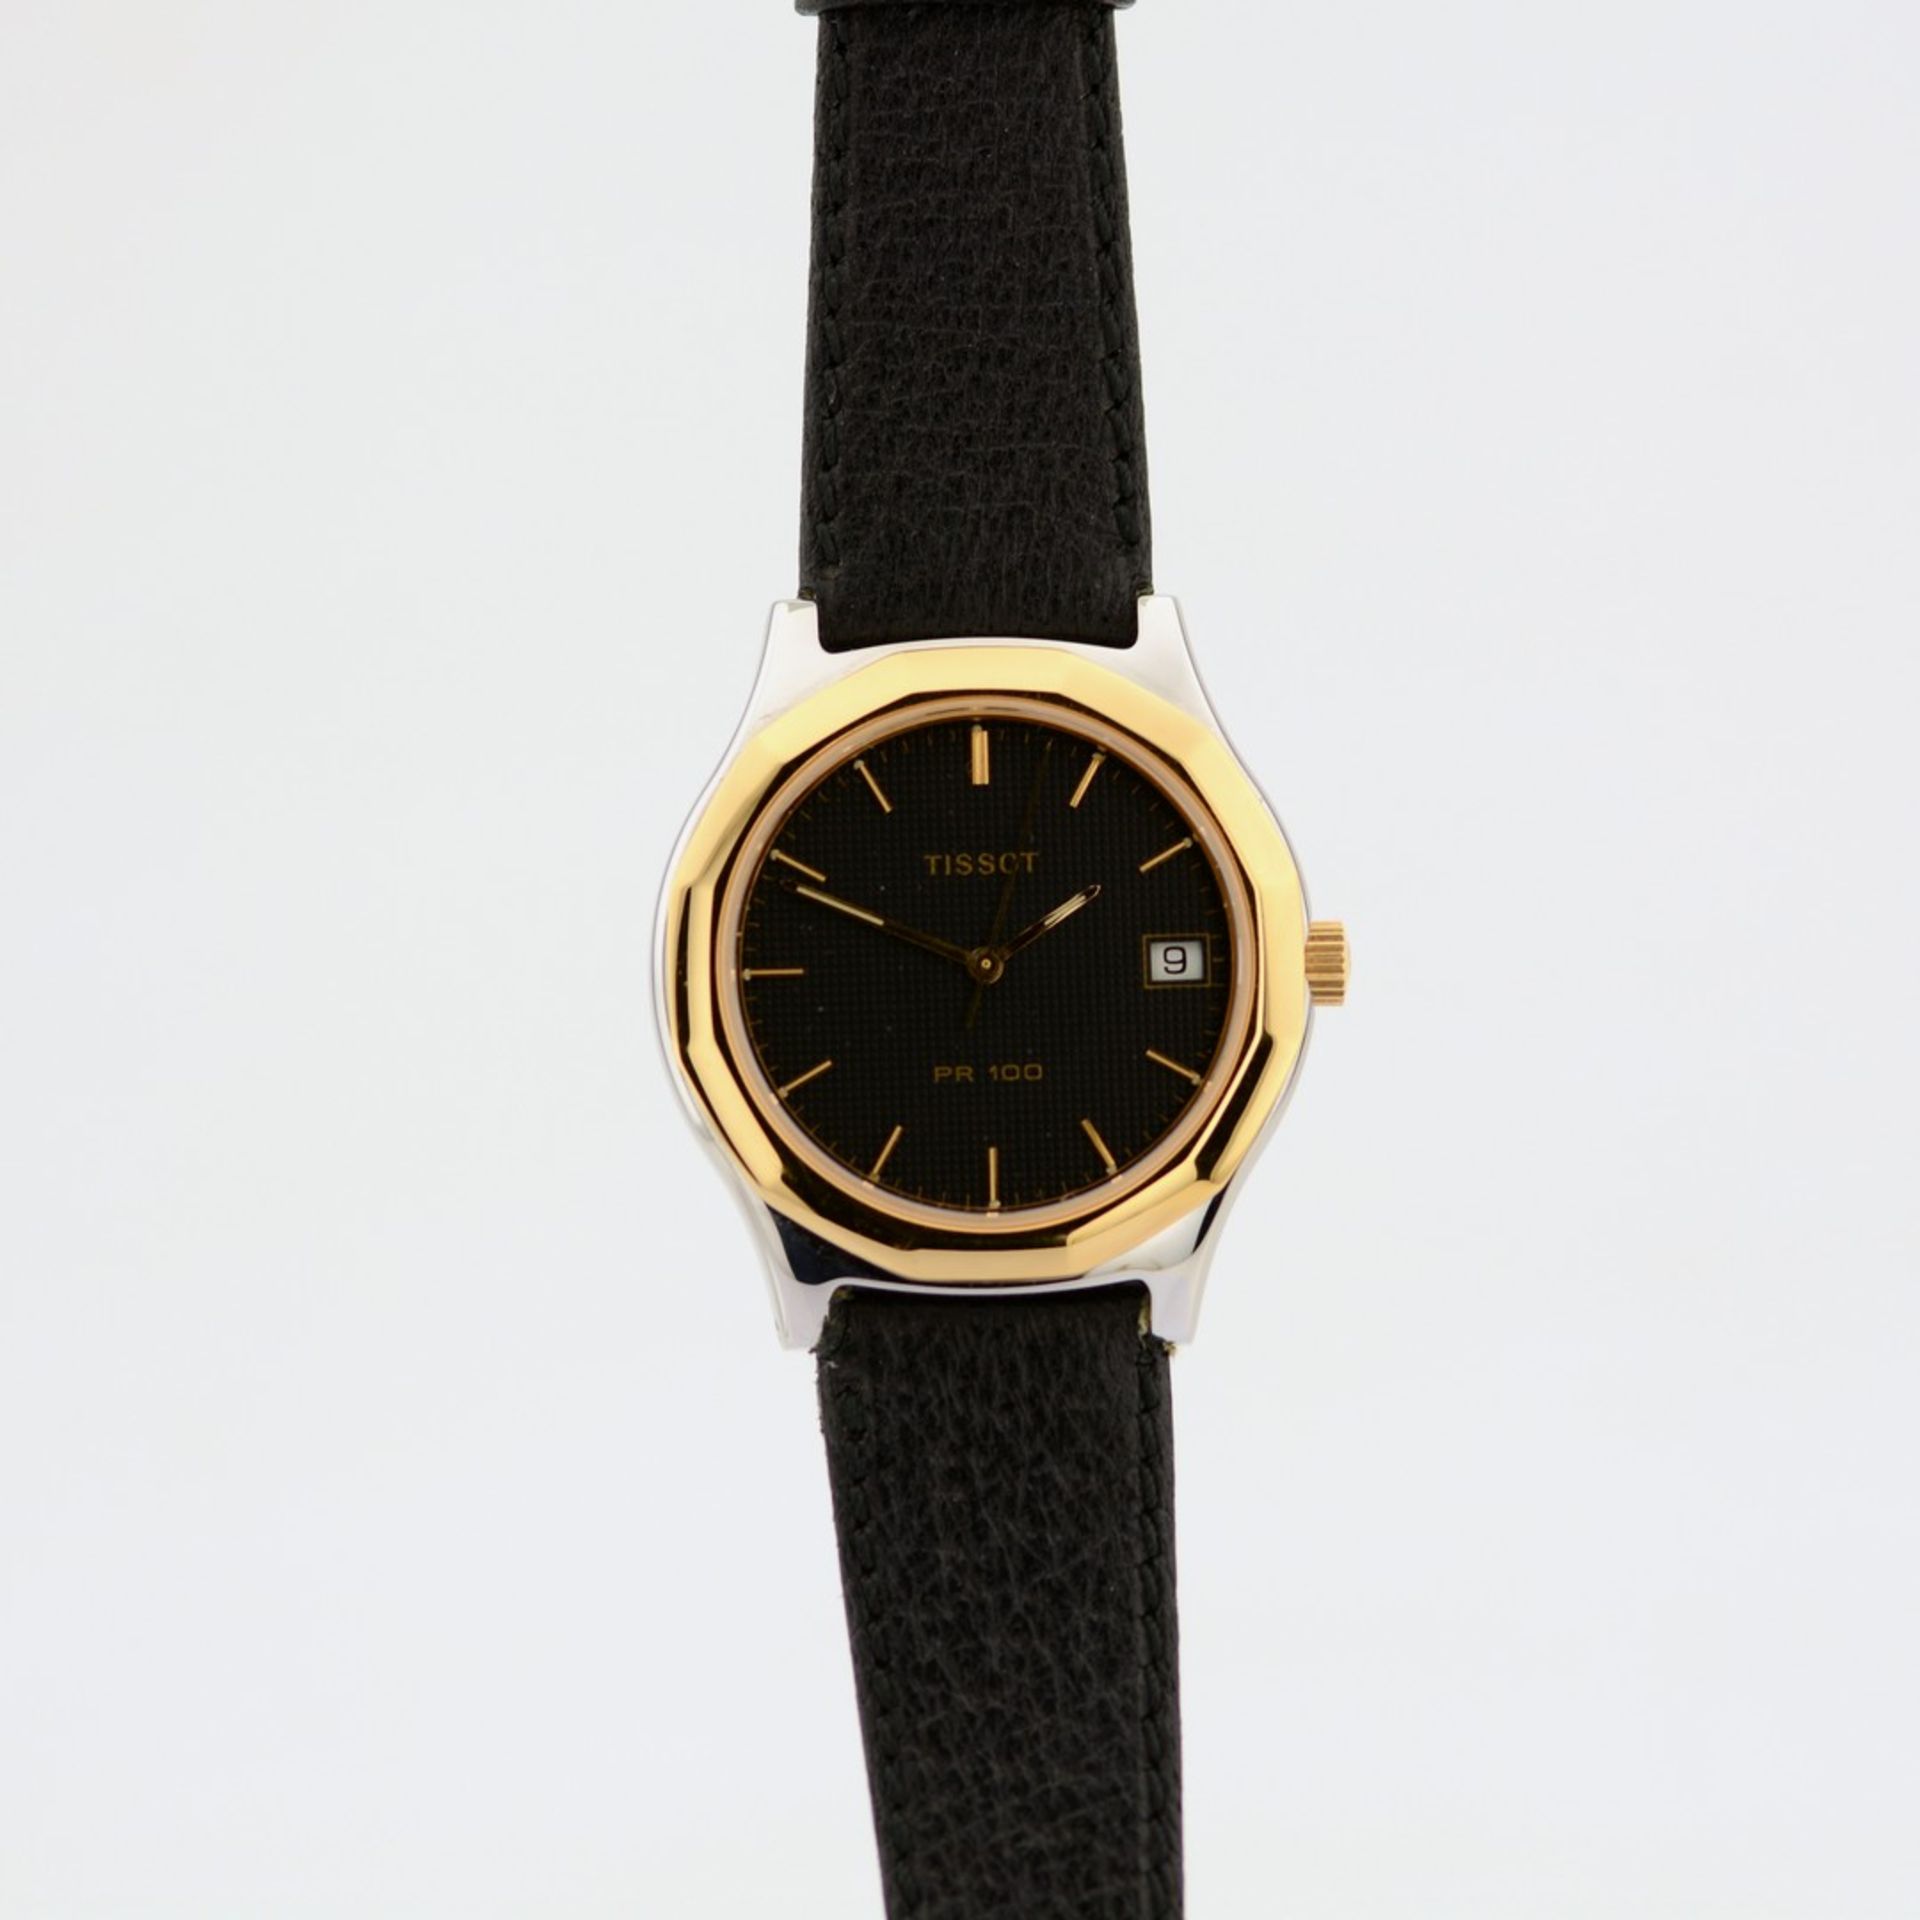 Tissot / PR100 - P 385/K Date - (Unworn) Gentlemen's Steel Wrist Watch - Image 5 of 10